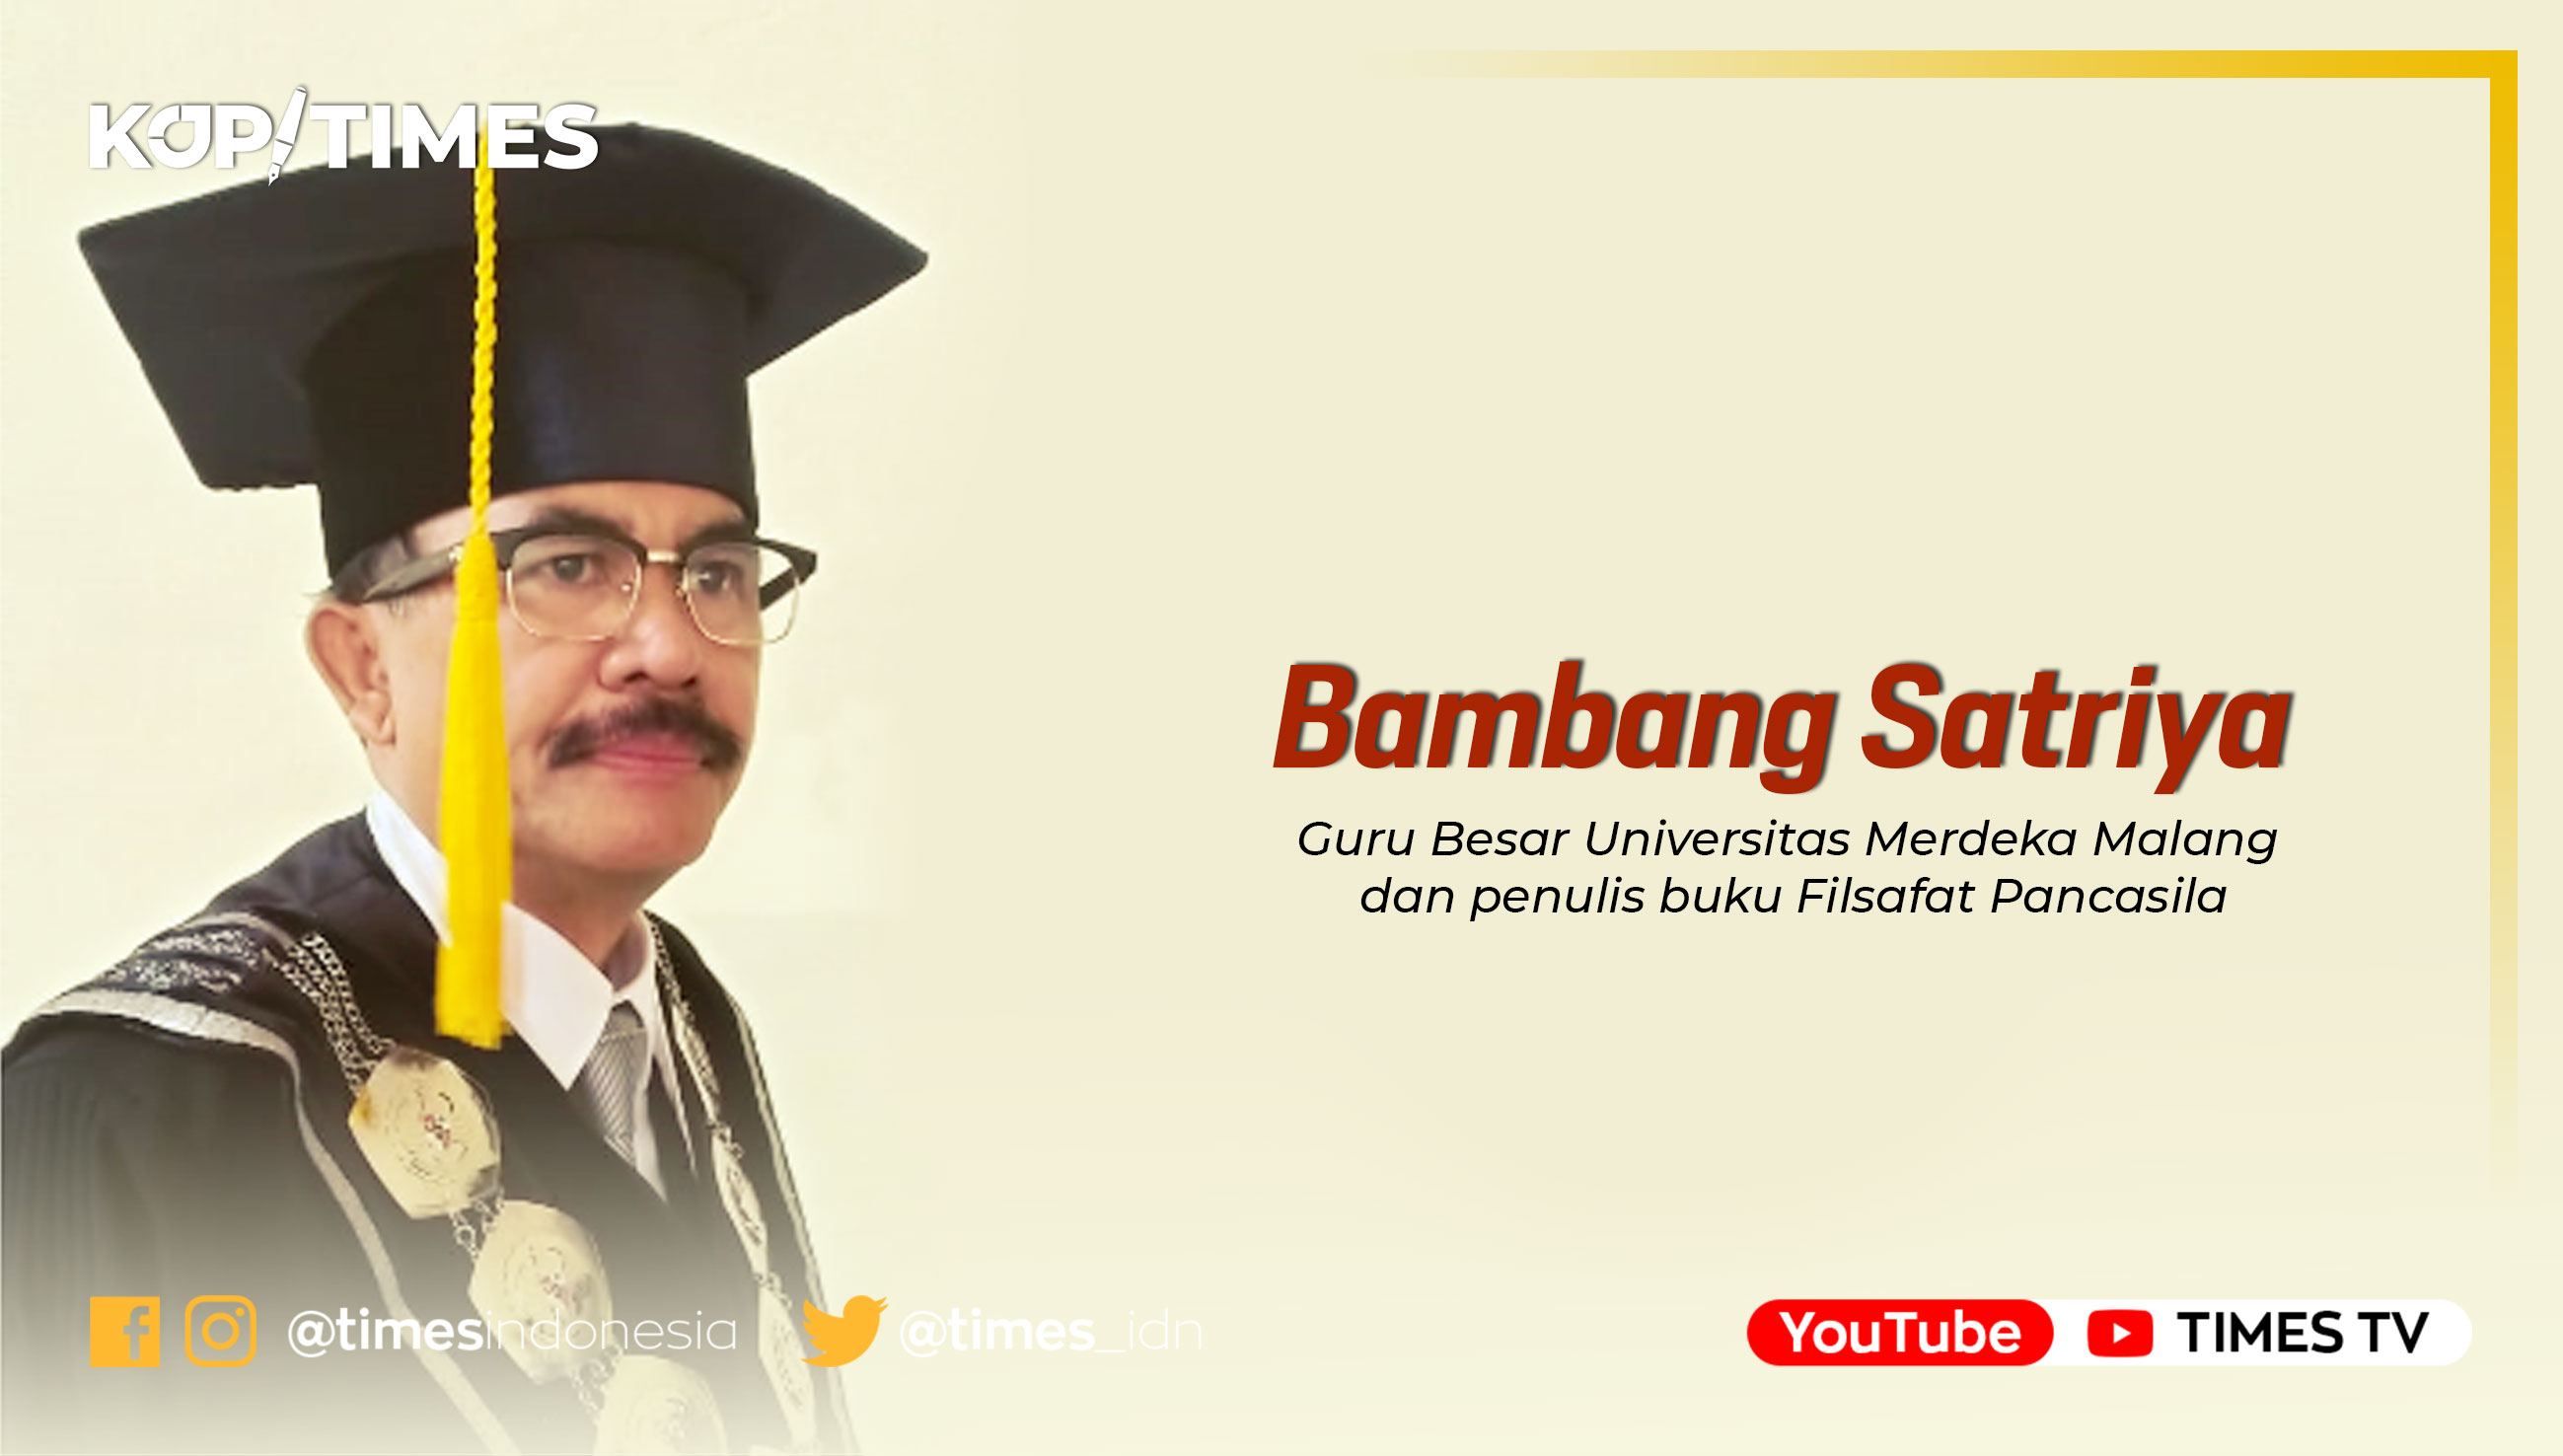 Bambang Satriya; Guru Besar Fakultas Hukum Universitas Merdeka Malang dan Penulis buku.